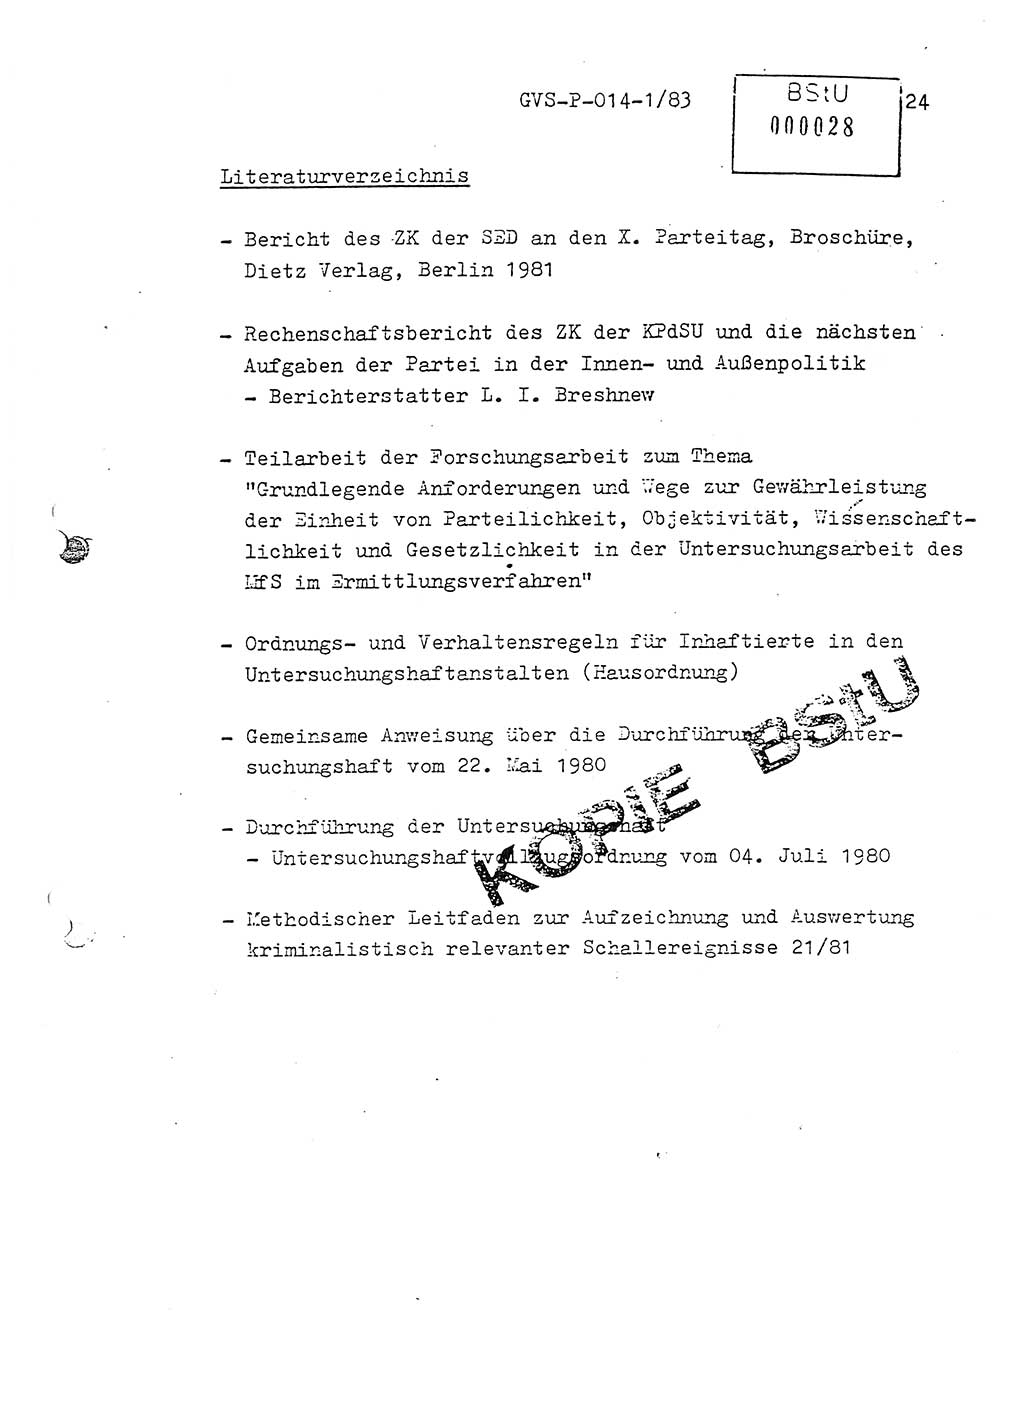 Fachschulabschlußarbeit Leutnant Dirk Autentrieb (HA Ⅸ/AKG), Ministerium für Staatssicherheit (MfS) [Deutsche Demokratische Republik (DDR)], Hauptabteilung (HA) Ⅸ, Geheime Verschlußsache (GVS) P-014-1/83, Berlin 1983, Blatt 24 (FS-Abschl.-Arb. MfS DDR HA Ⅸ GVS P-014-1/83 1983, Bl. 24)